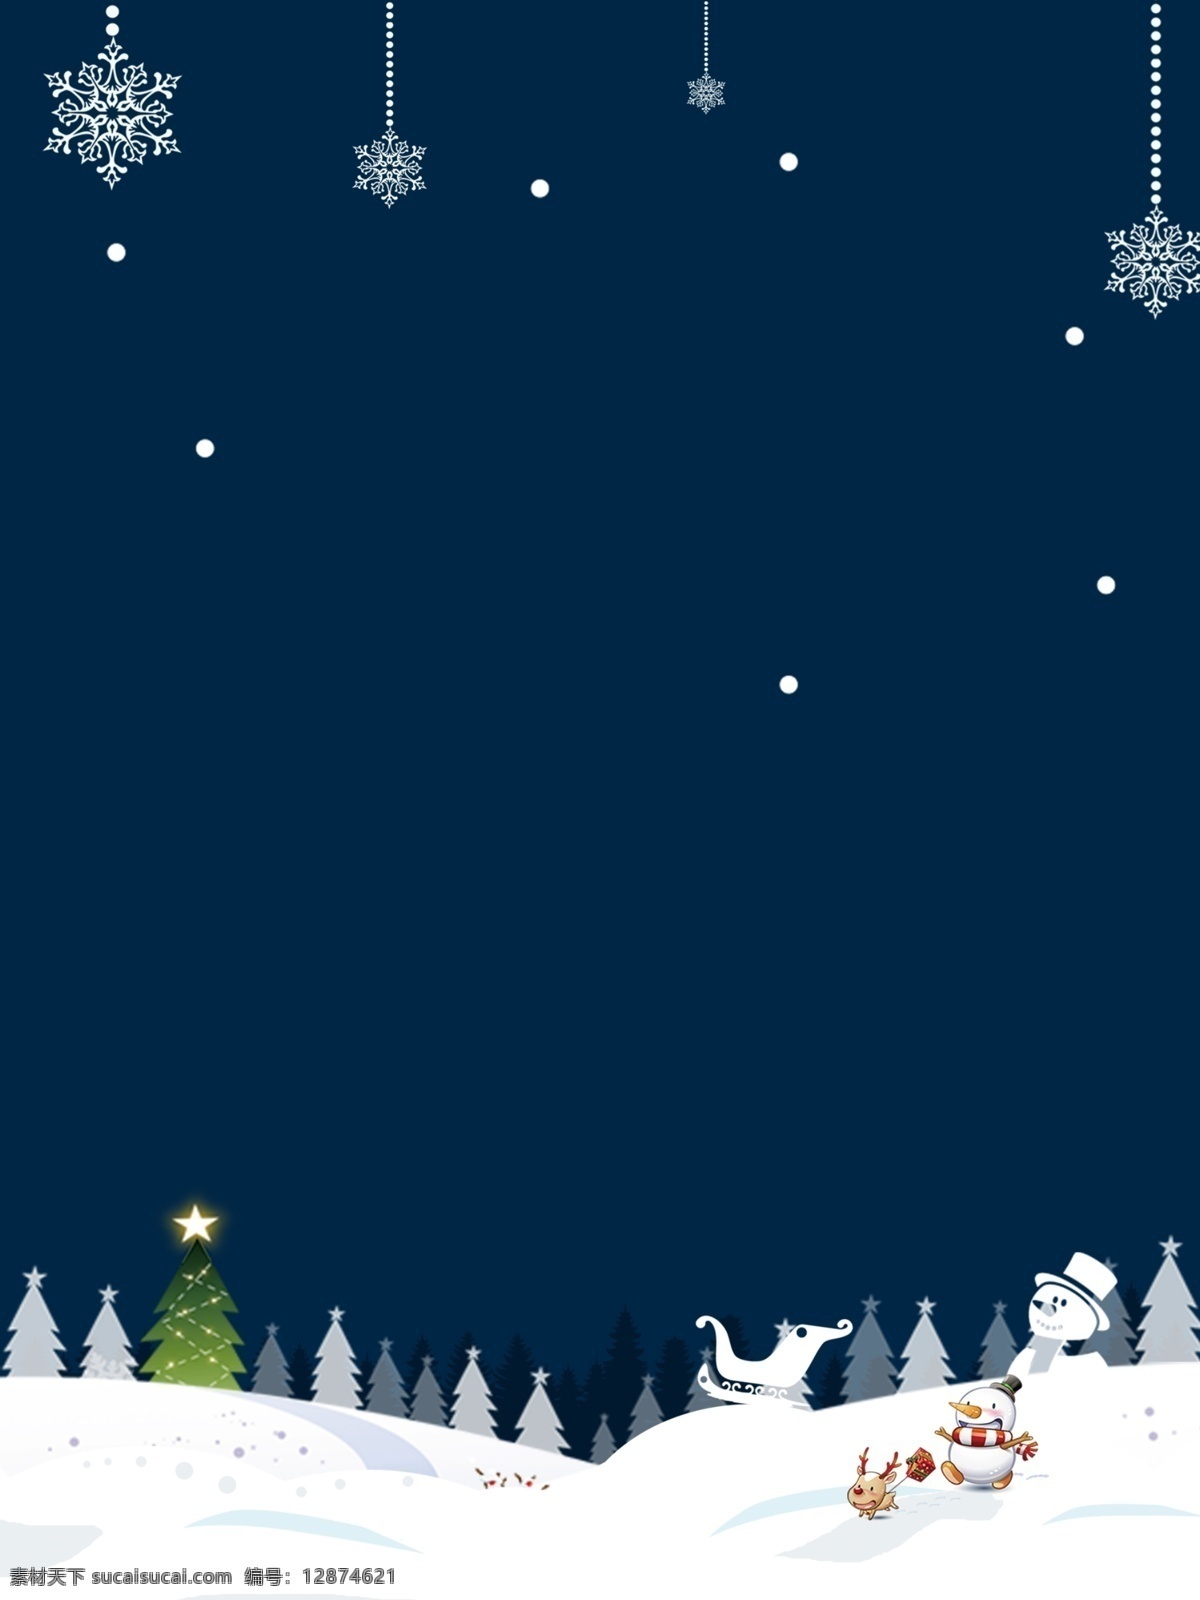 简约 蓝色 圣诞 促销 背景 雪地 圣诞装饰 圣诞主题 新年背景 圣诞节活动 圣诞图 圣诞背景素材 圣诞背景设计 圣诞背景图 圣诞节dm单 圣诞大促 圣诞促销展板